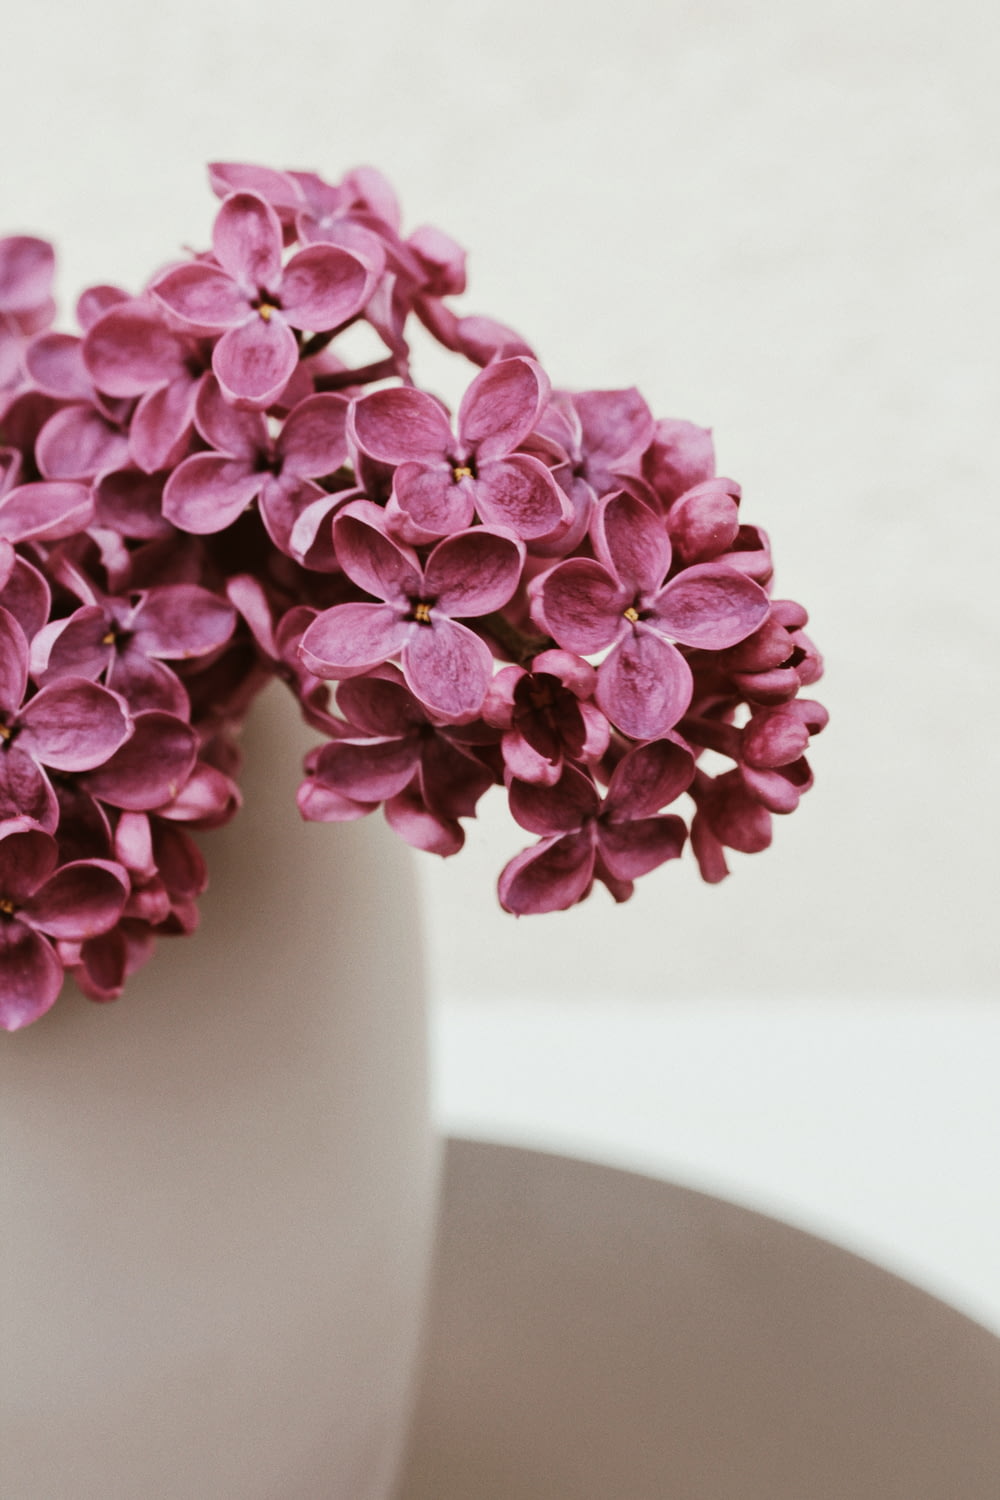 purple flowers in white ceramic vase